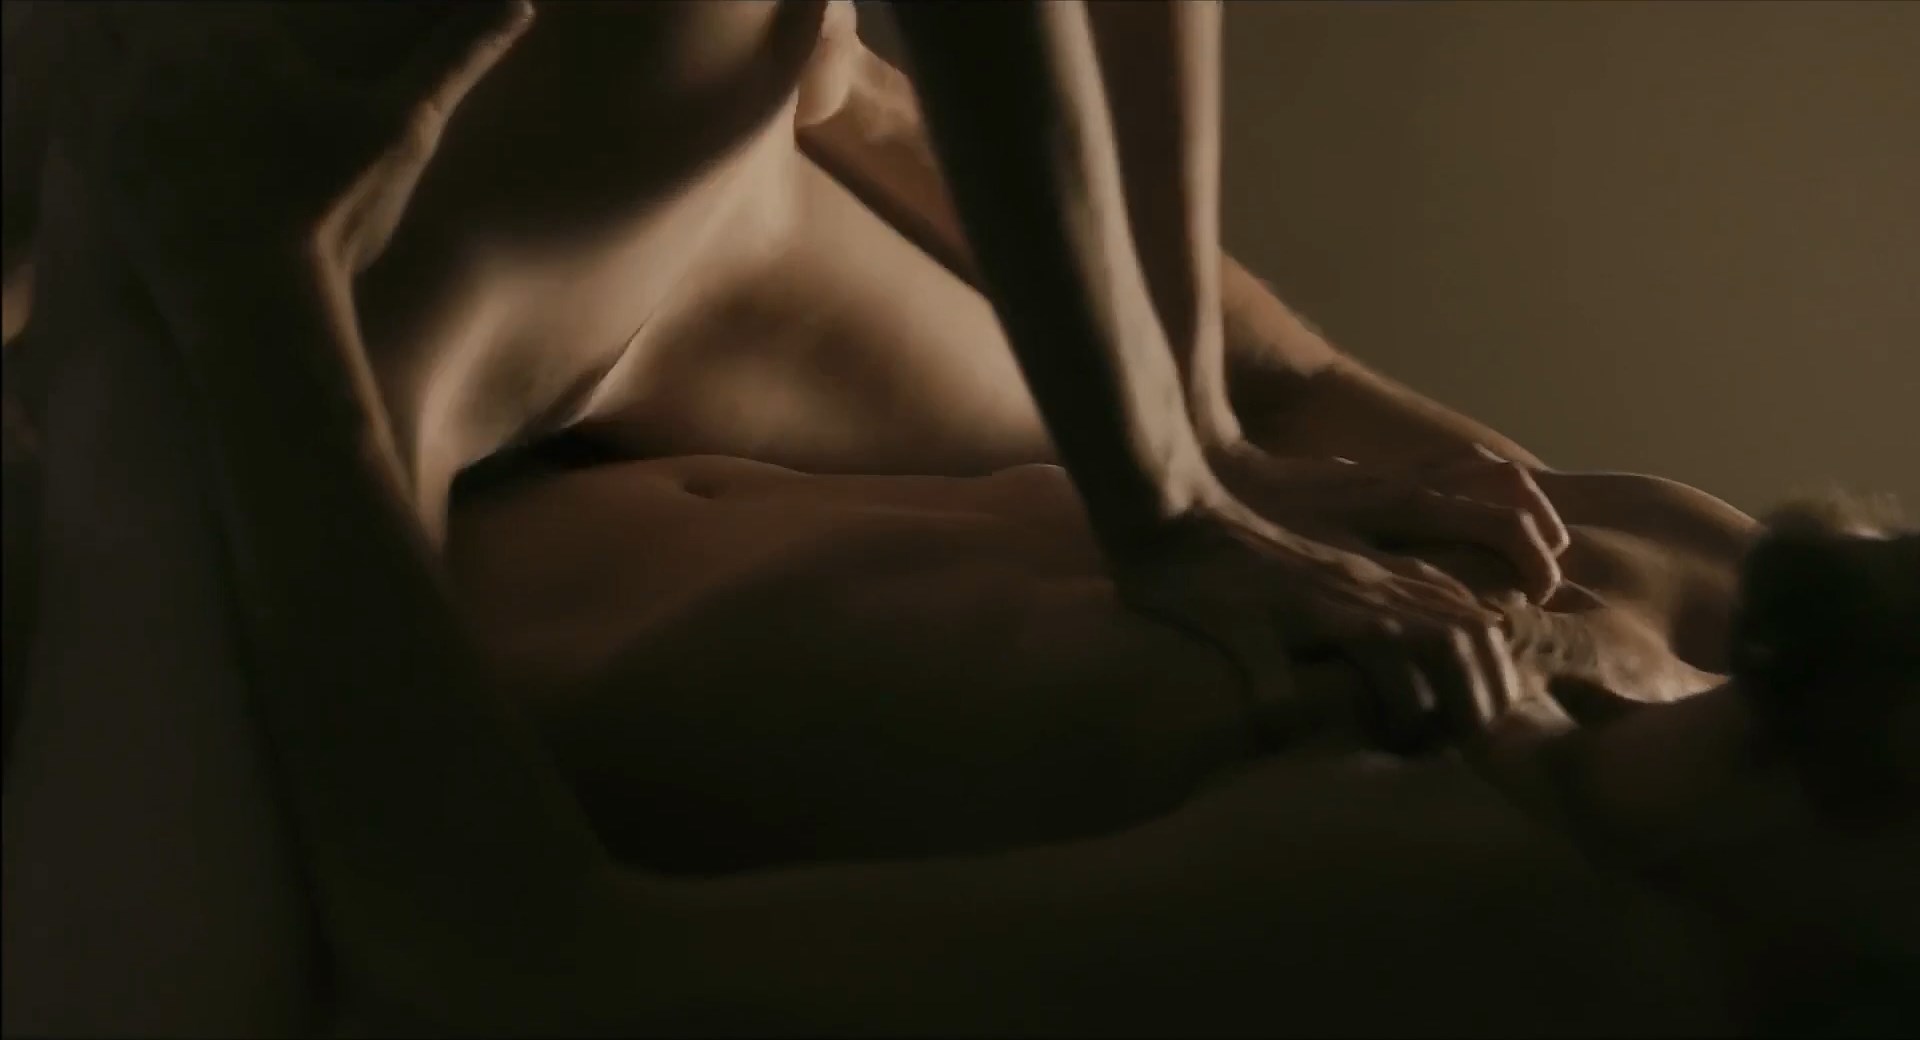 Grevee Sex Video Hd - Watch Online - Sabrina Greve - O Duplo (2012) HD 1080p